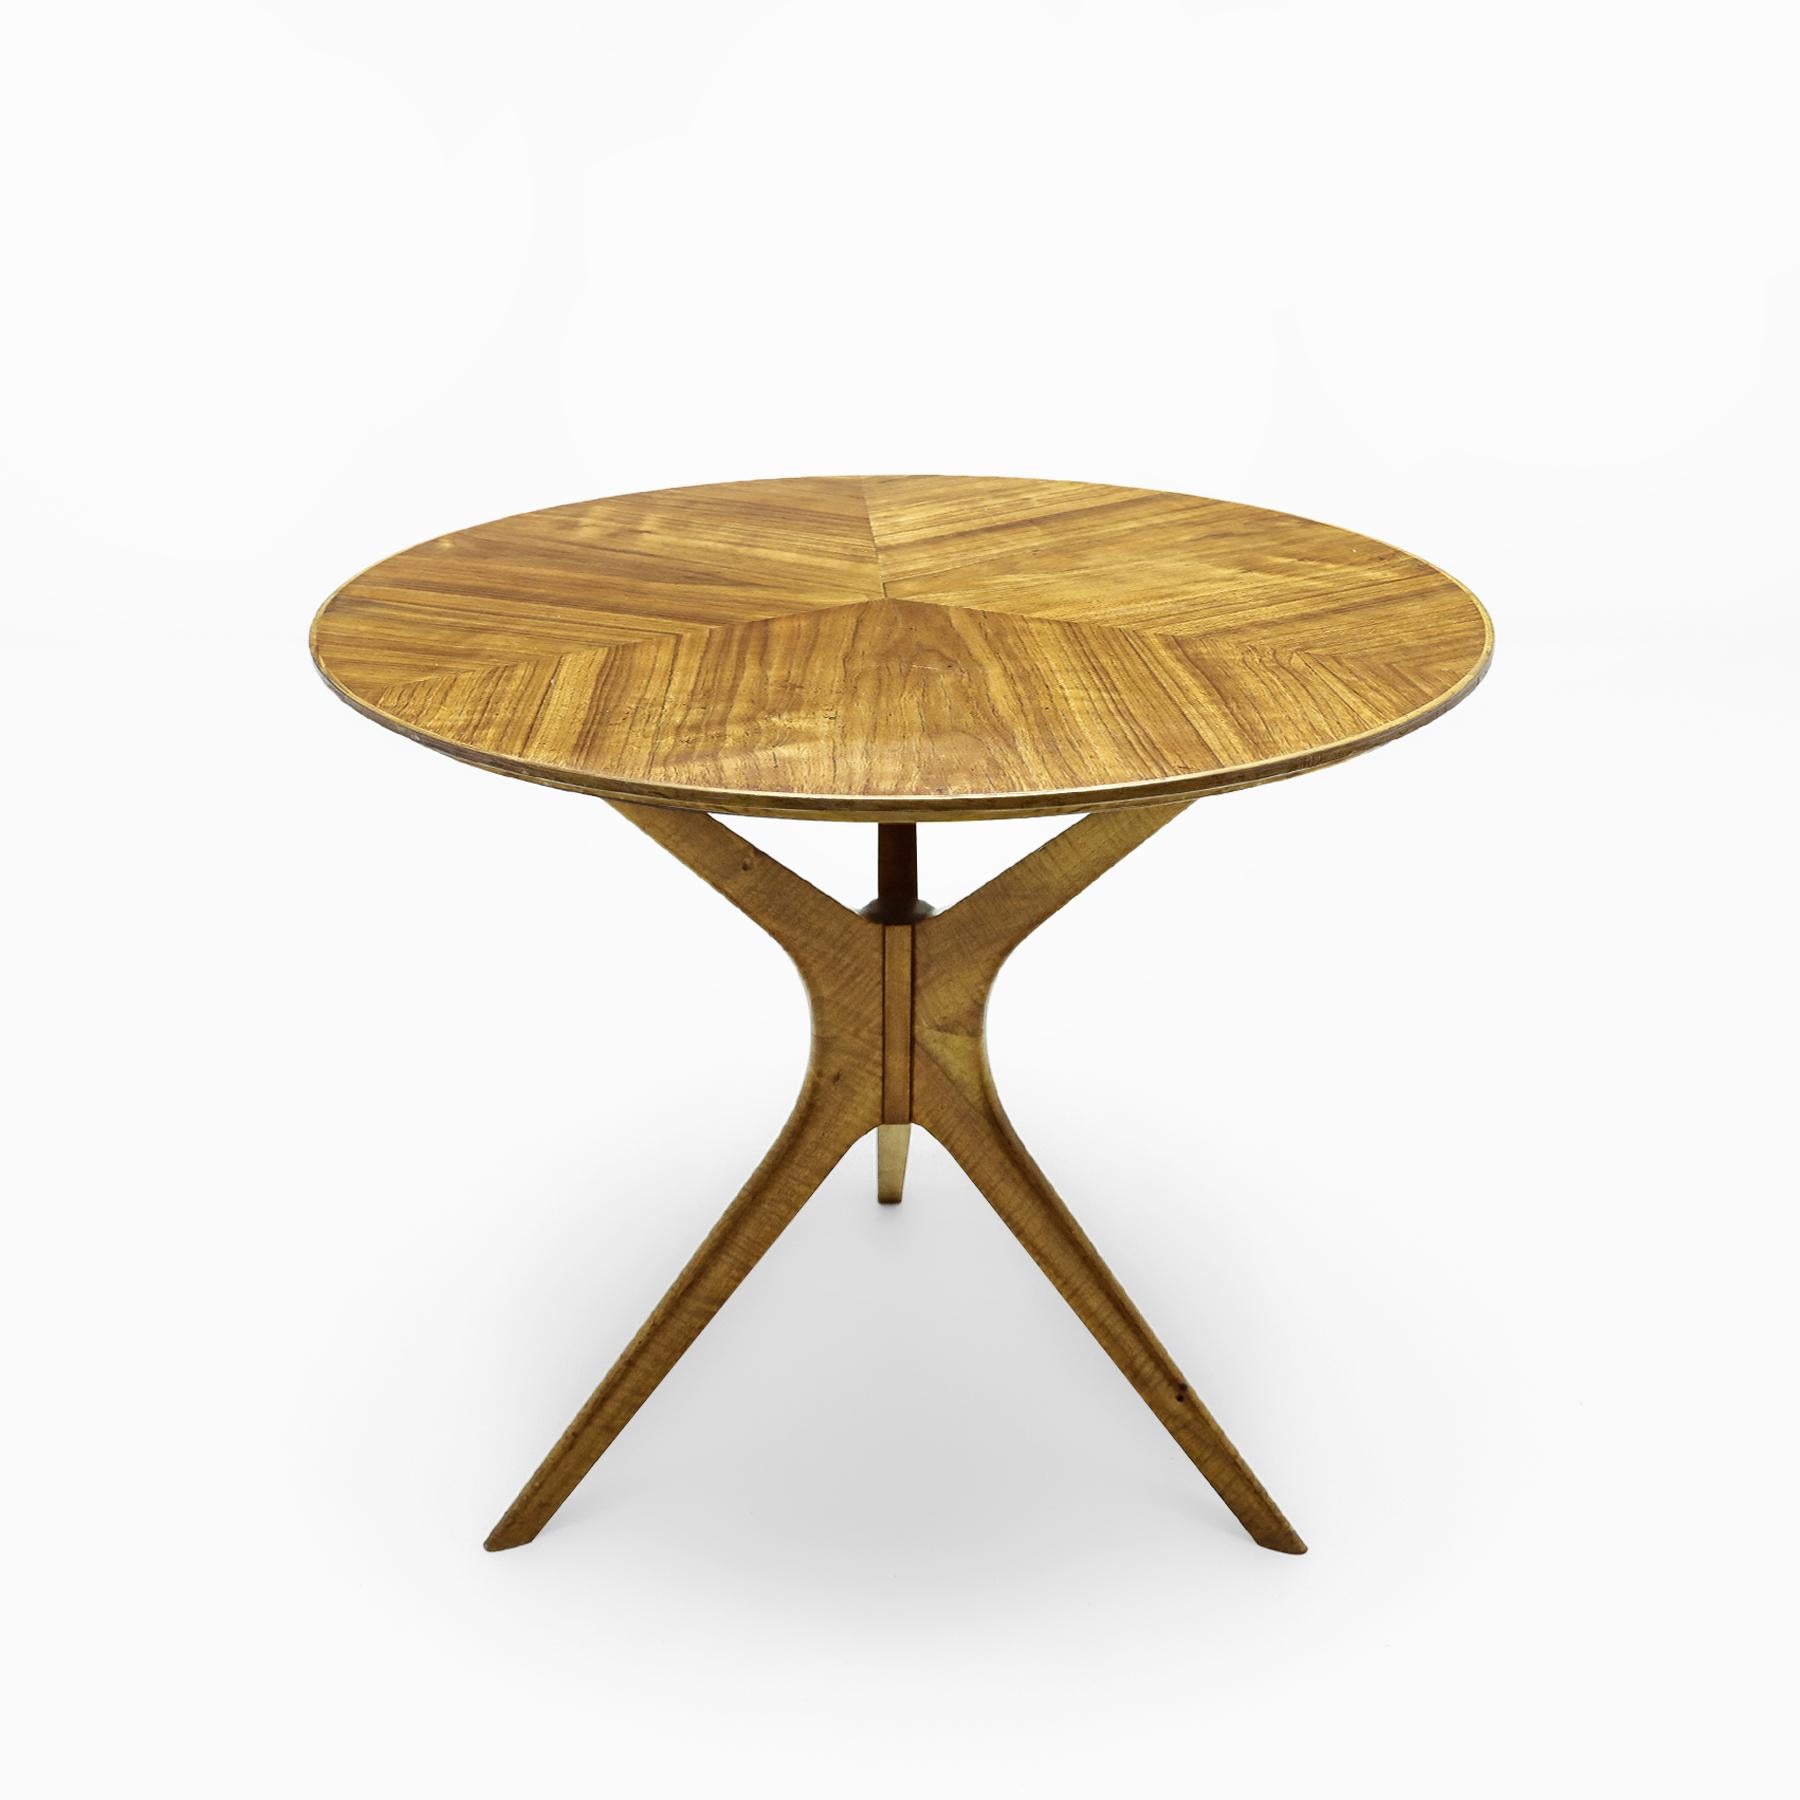 Insolite table d'appoint tri-symétrique en cerisier et bois satiné de style italien Vladimir Kagan.
  
Il s'agit d'une merveilleuse petite table d'appoint décorative créée dans le même style que les tables d'appoint tri-symétriques de Kagan, avec